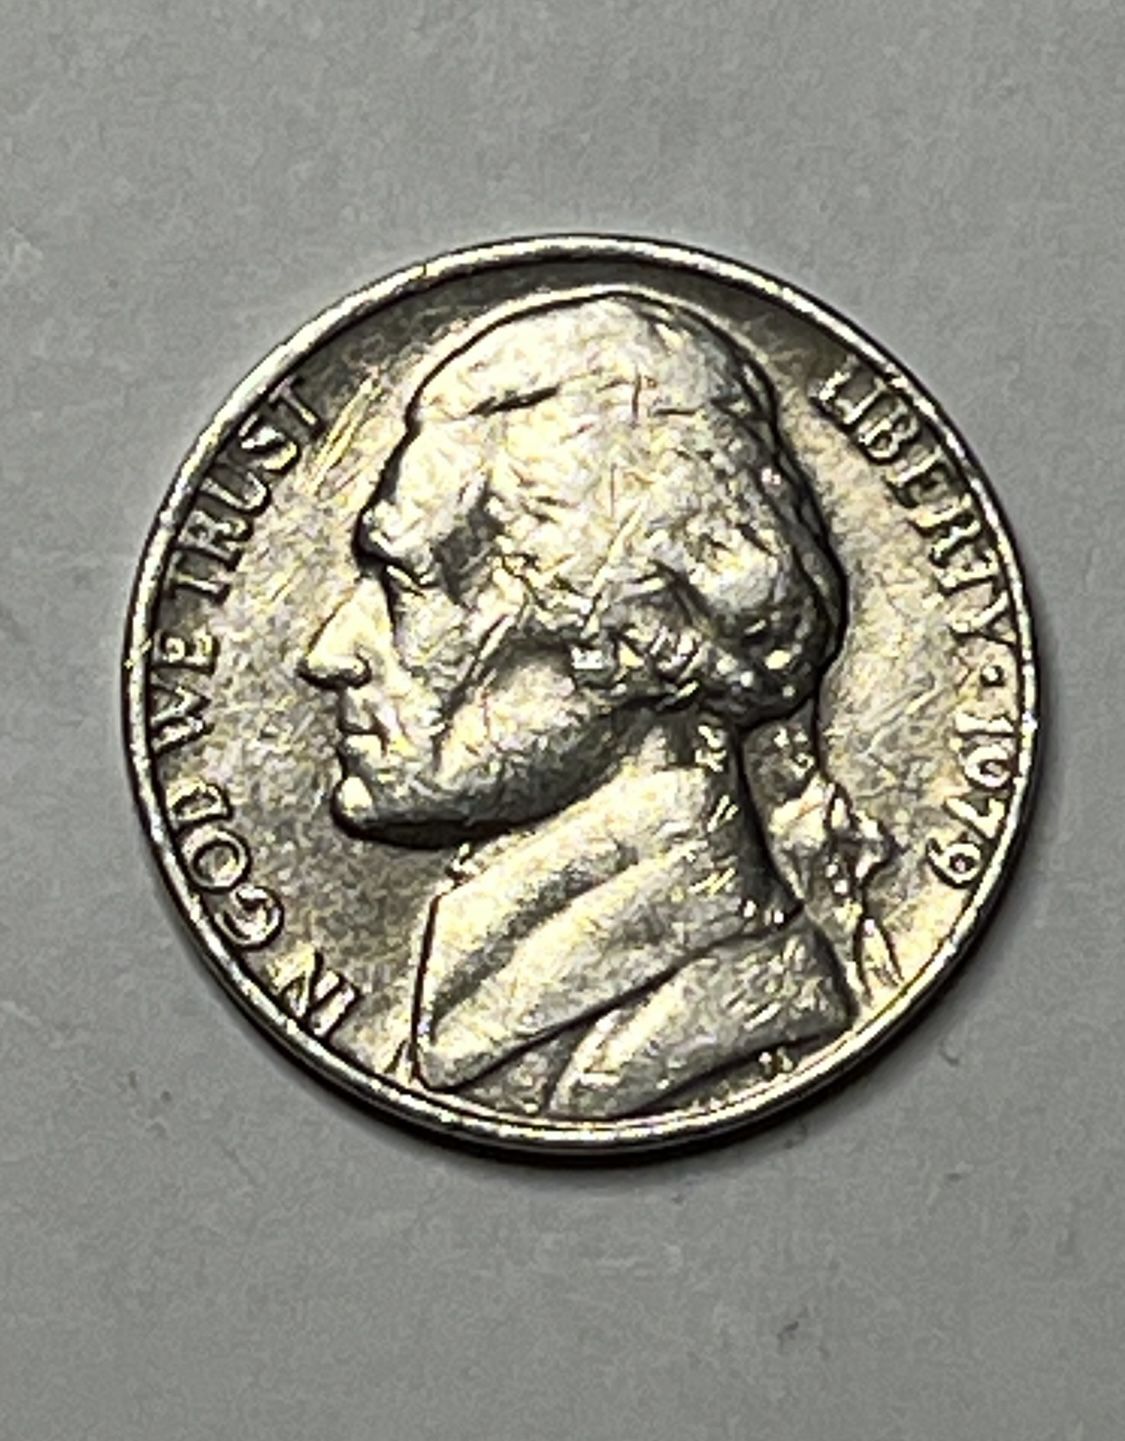 Nickel 1979